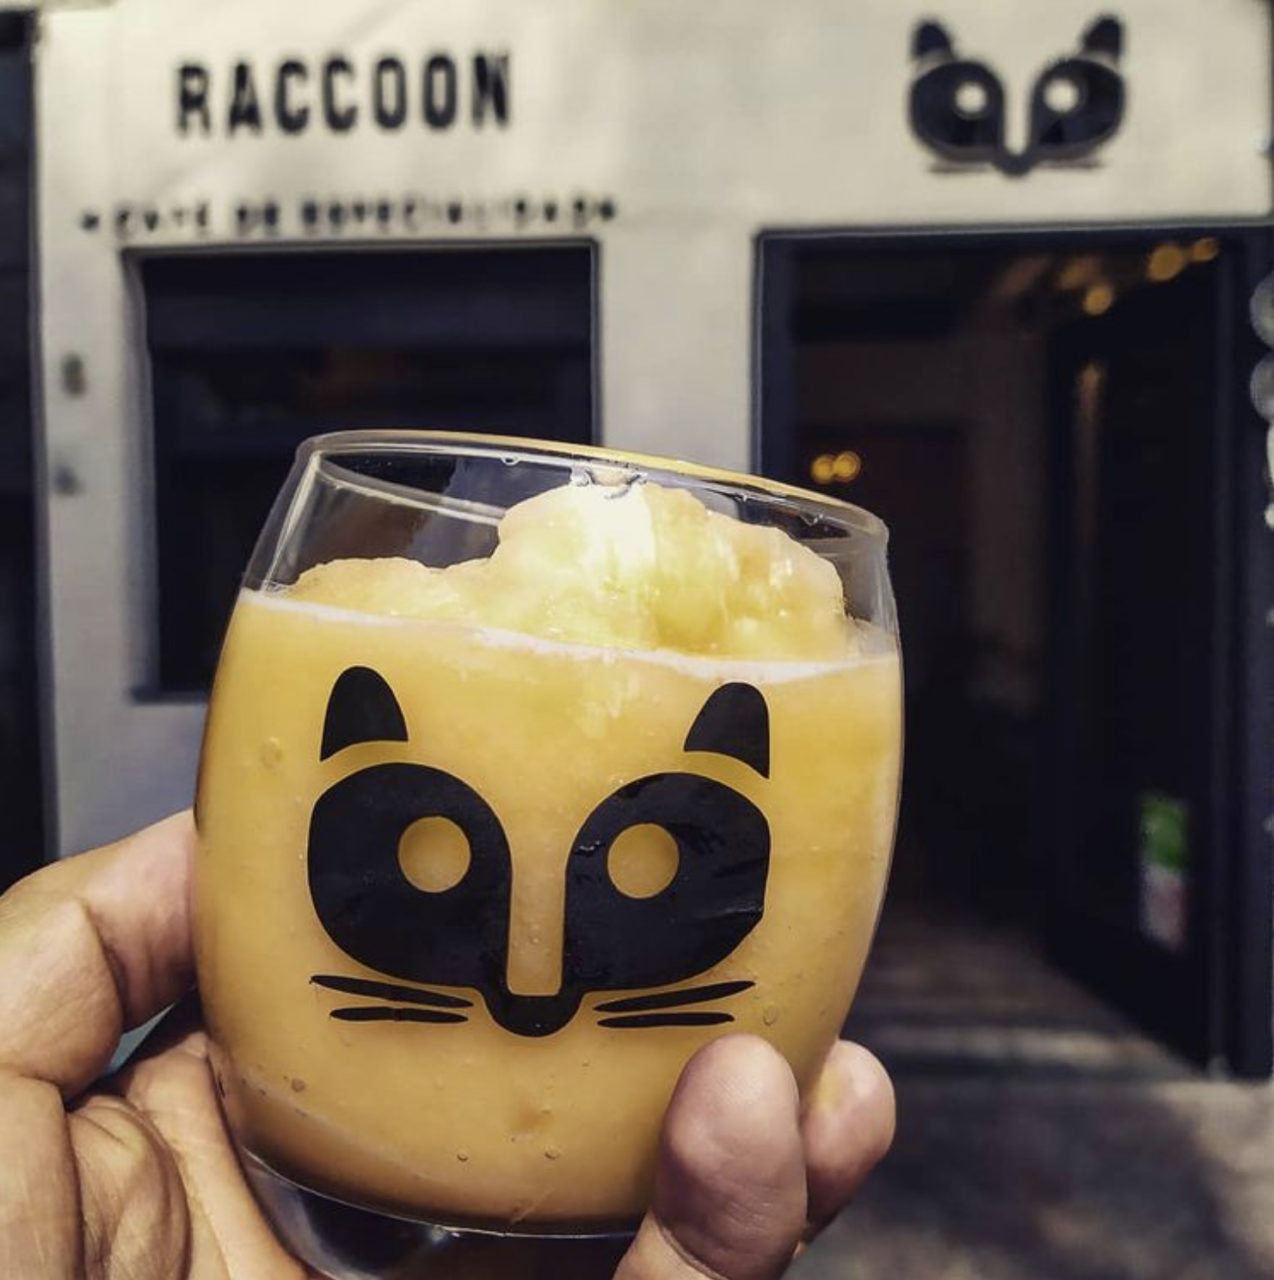 Raccoon Café